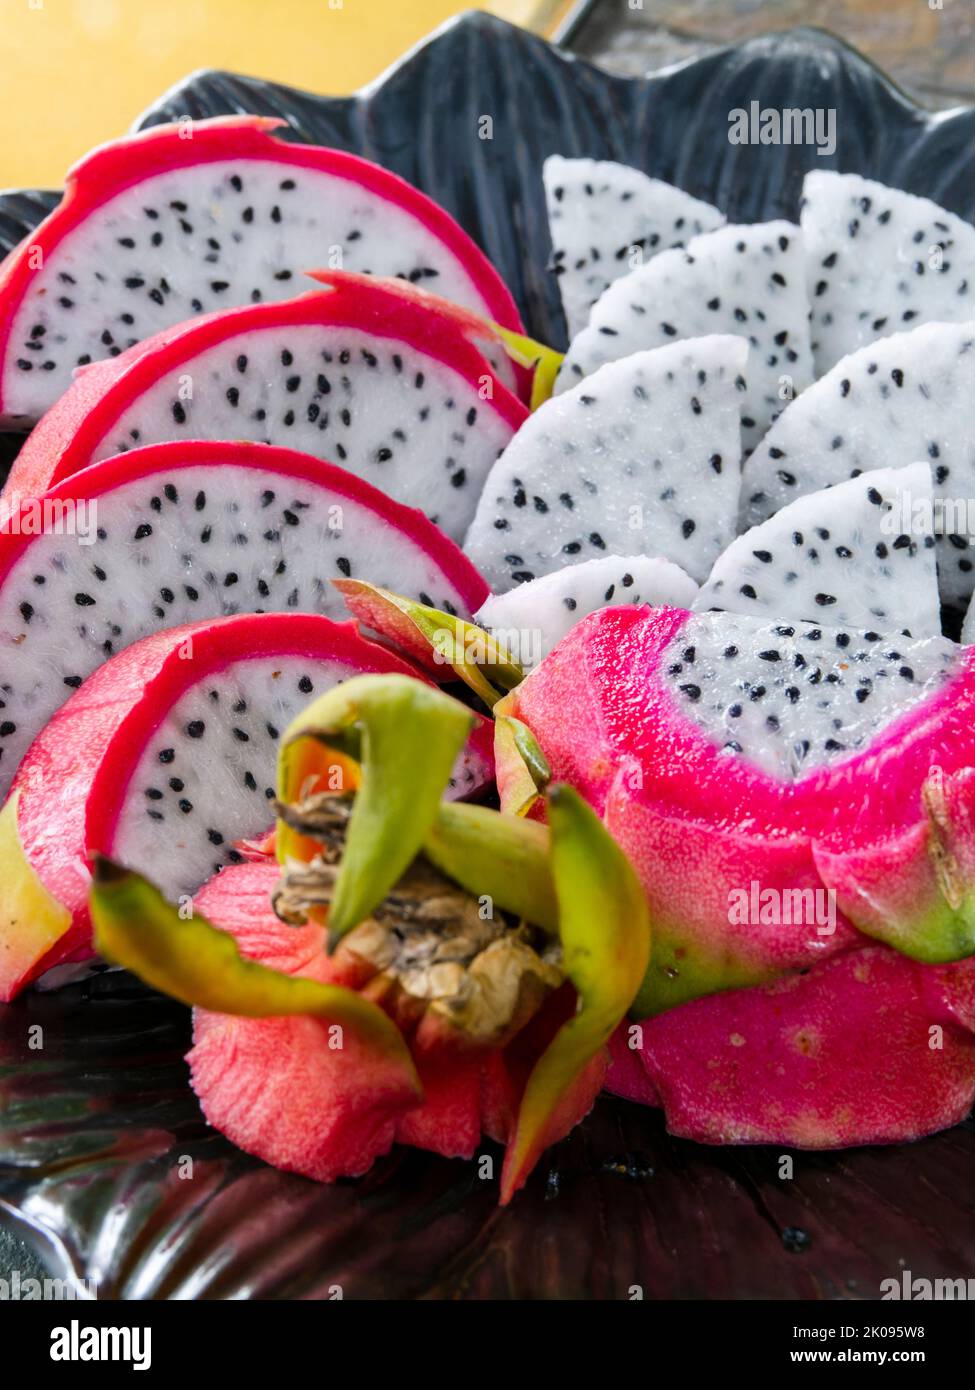 Plato de frutos de dragón en rodajas, pitahaya o pitaya, de la familia Cactaceae, fruto de varias especies de cactus. Foto de stock